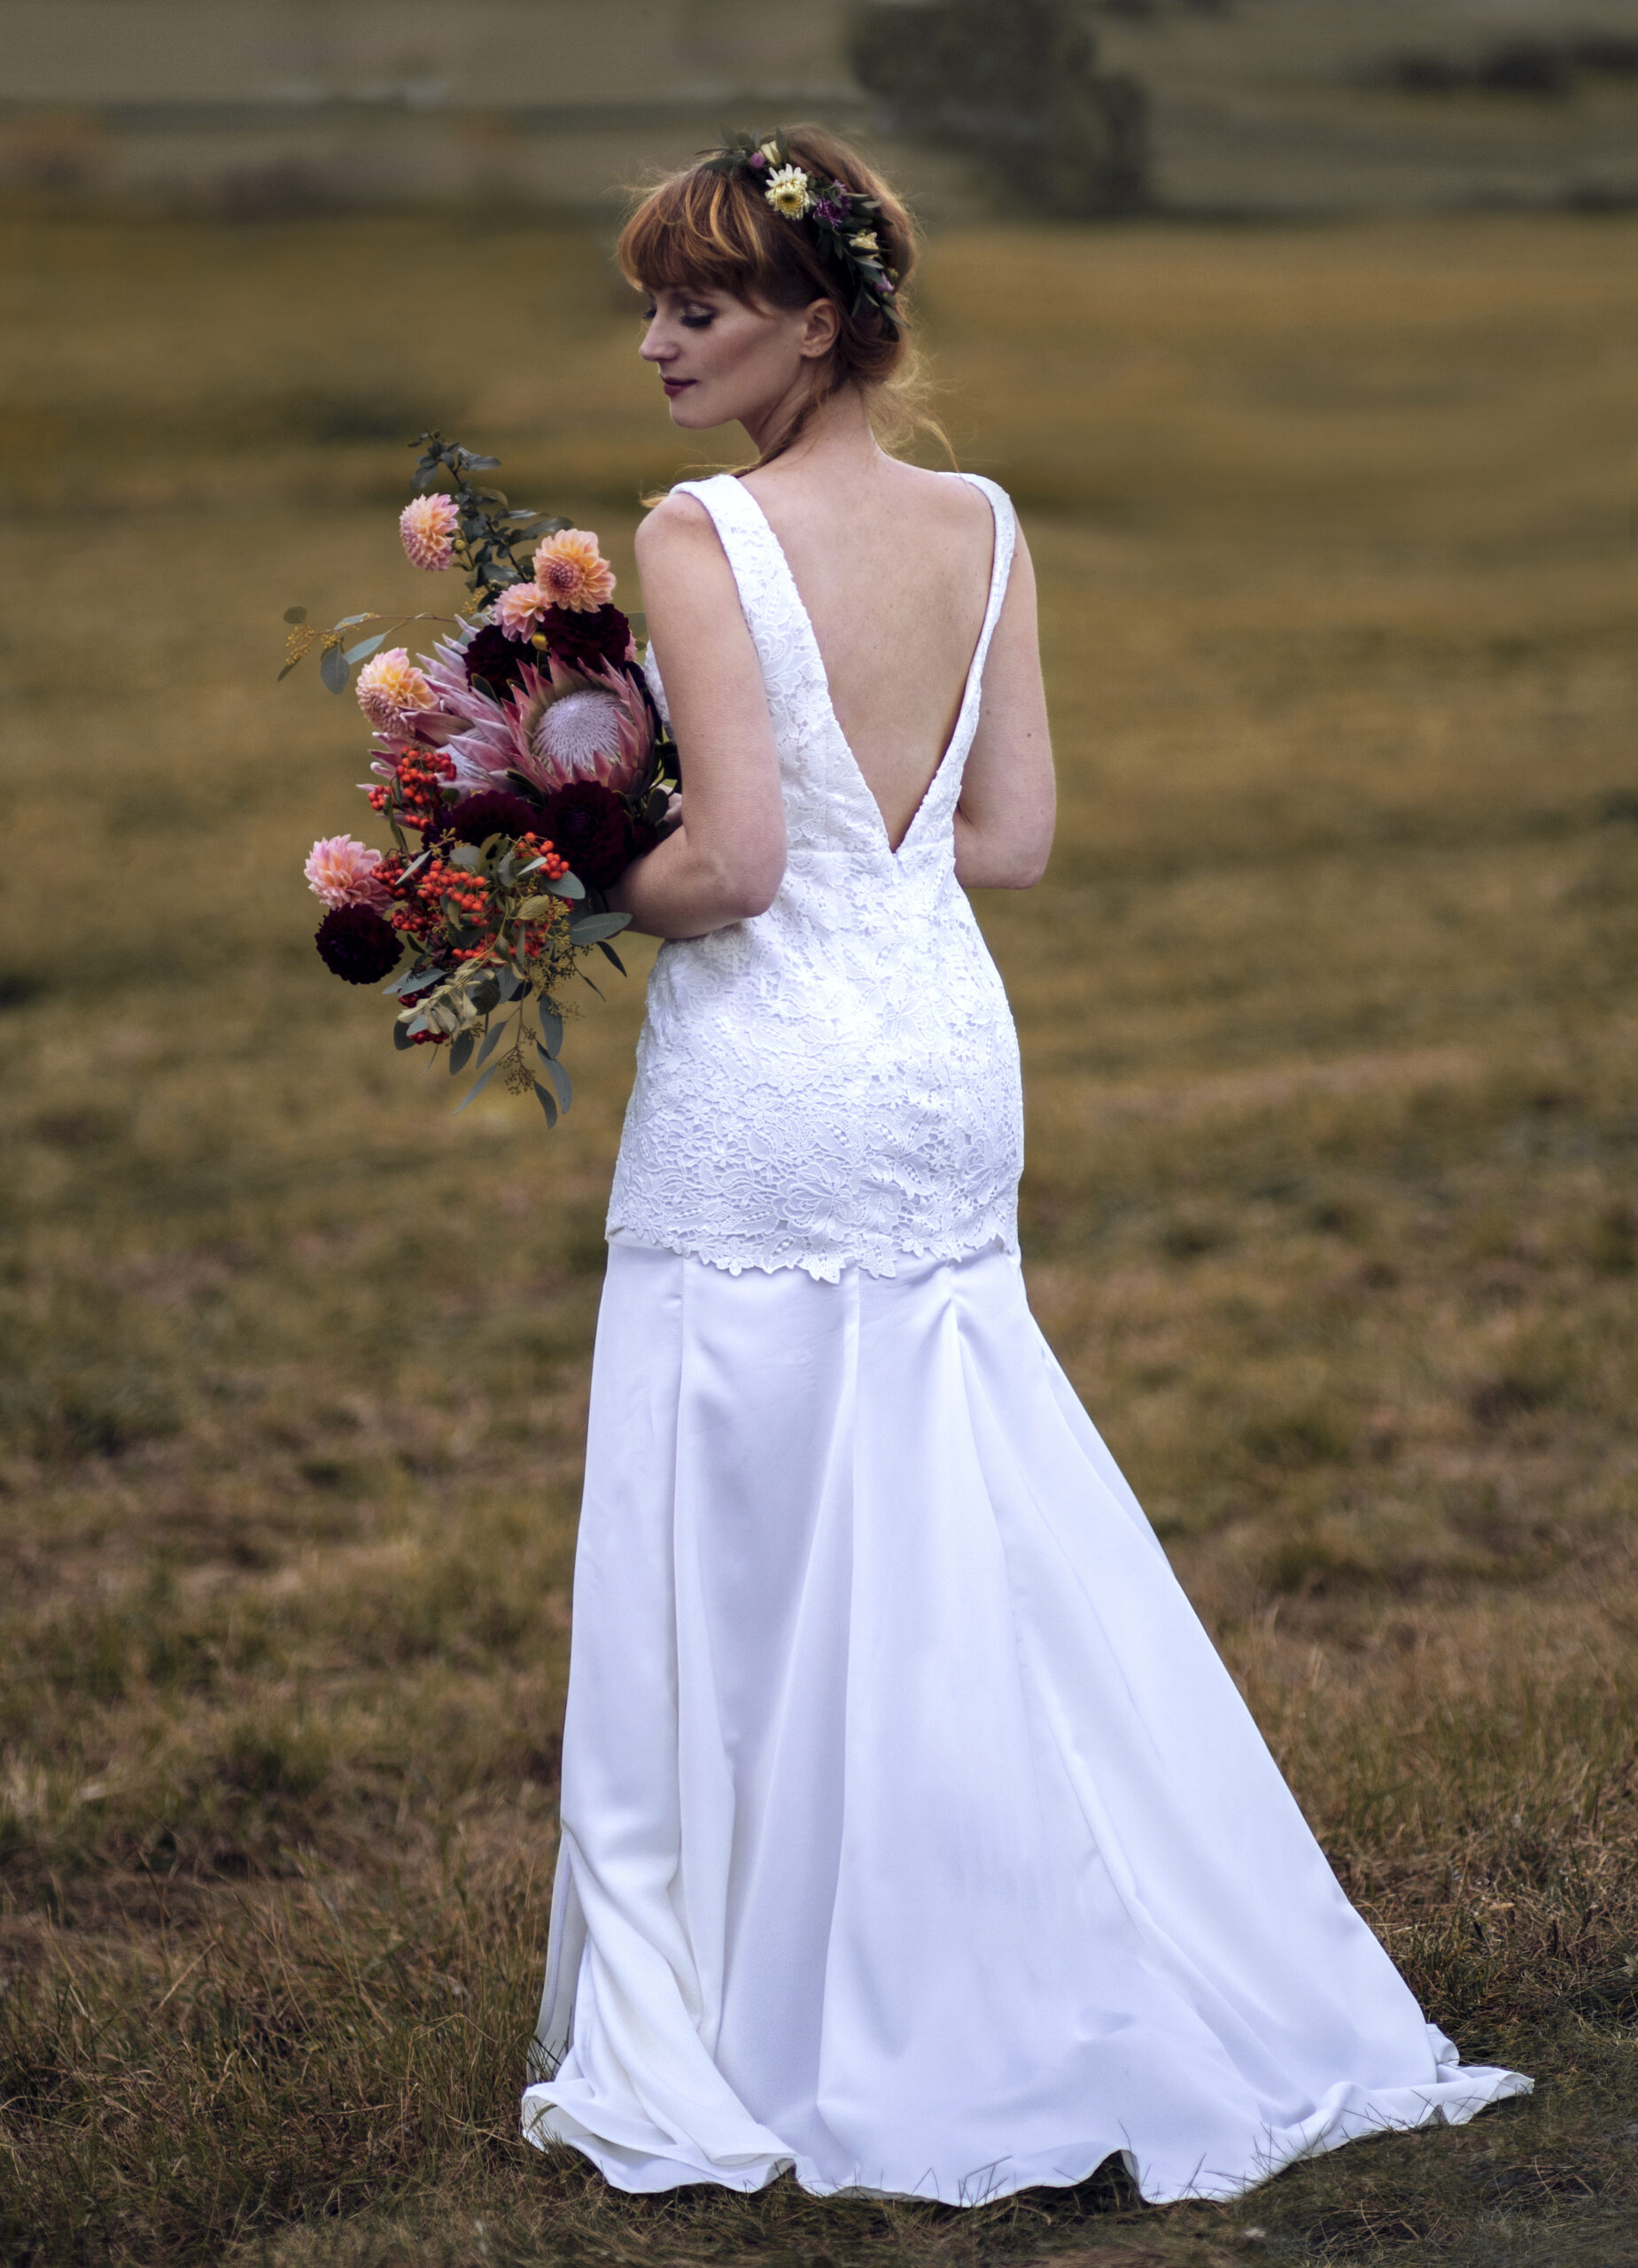 Brautkleid mit tiefem Rückenausschnitt im Boho-Stil, Brautstrauß in Blush und Bordeaux mit Protea und Dahlien